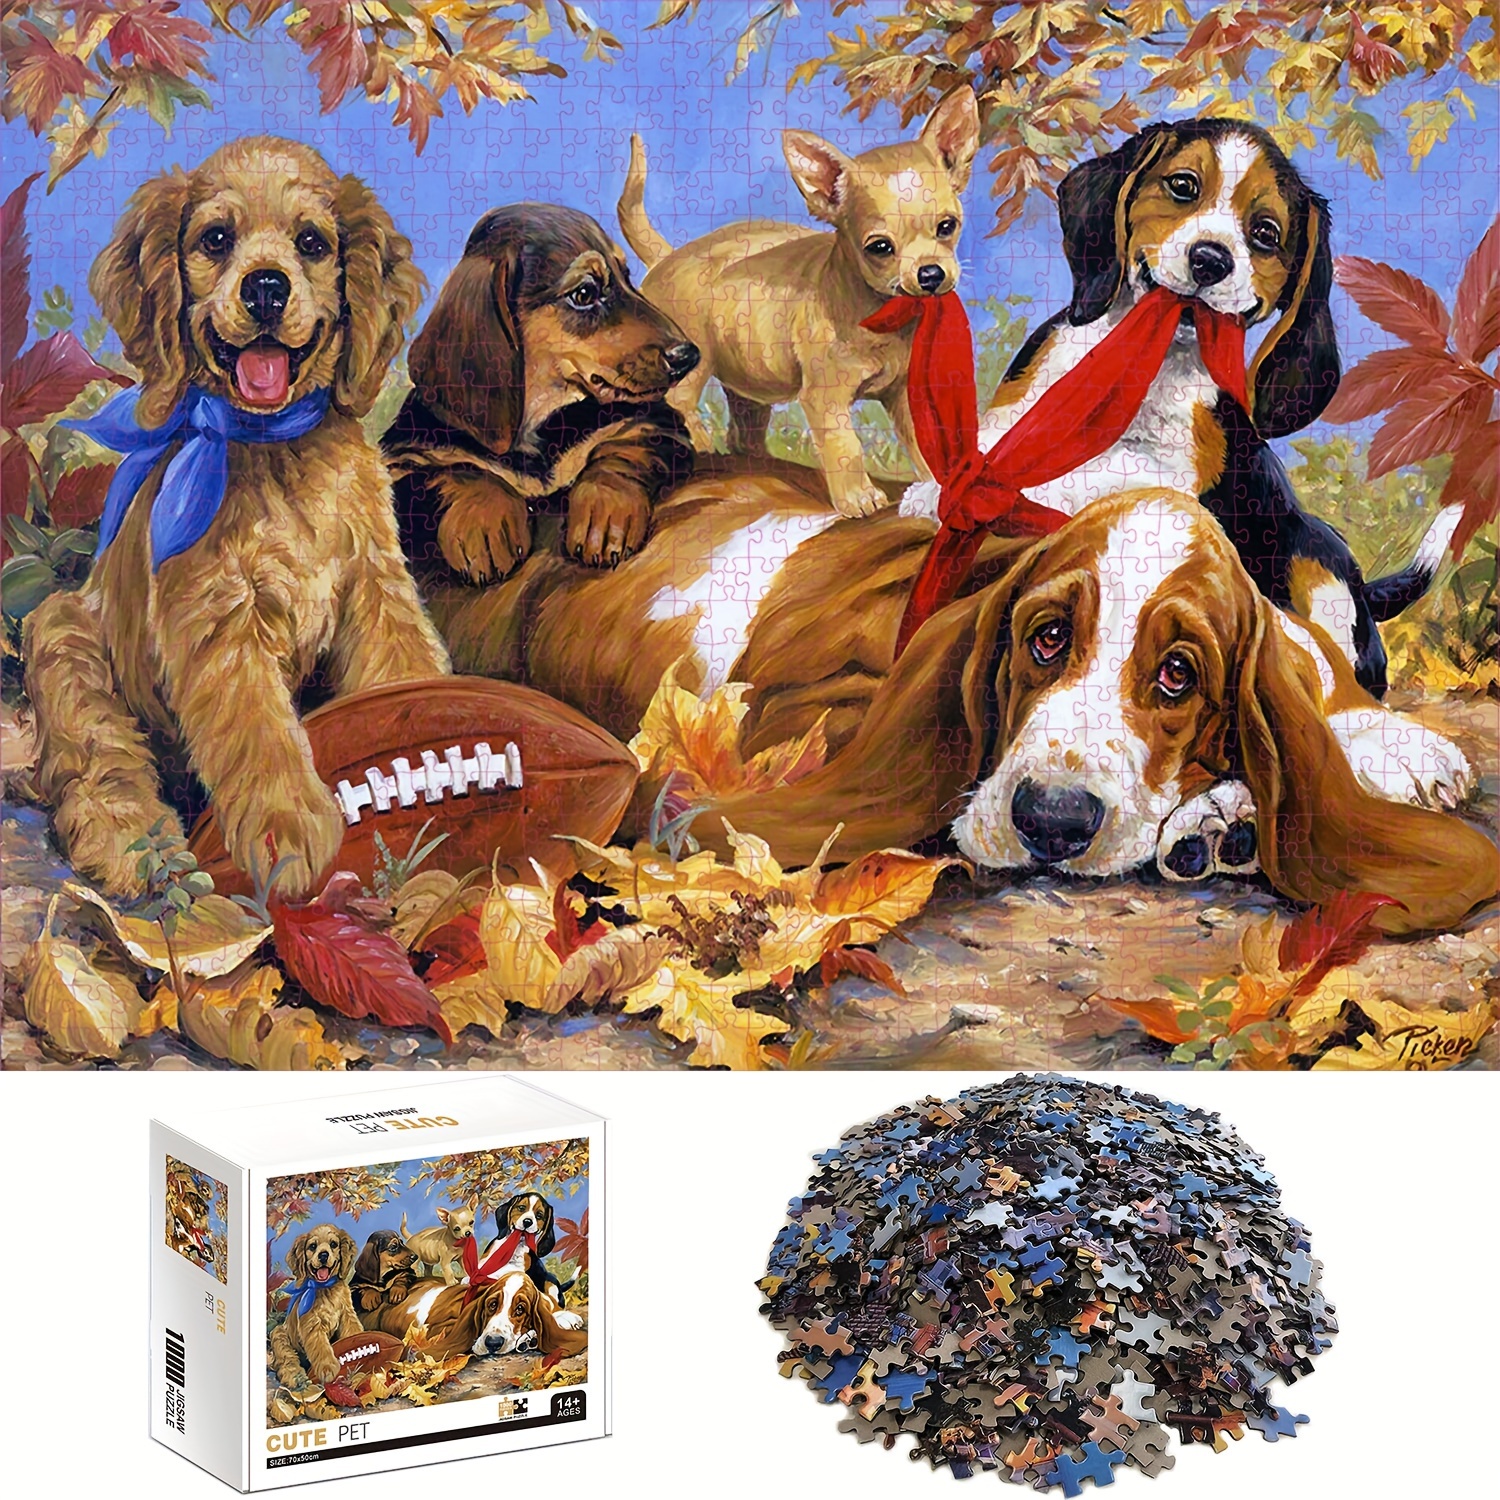 Beagle dog, wooden dog puzzle, Beagle dog puzzle, Beagle wooden puzzle,  animal shaped puzzle, wooden animal shaped puzzle, adult puzzle